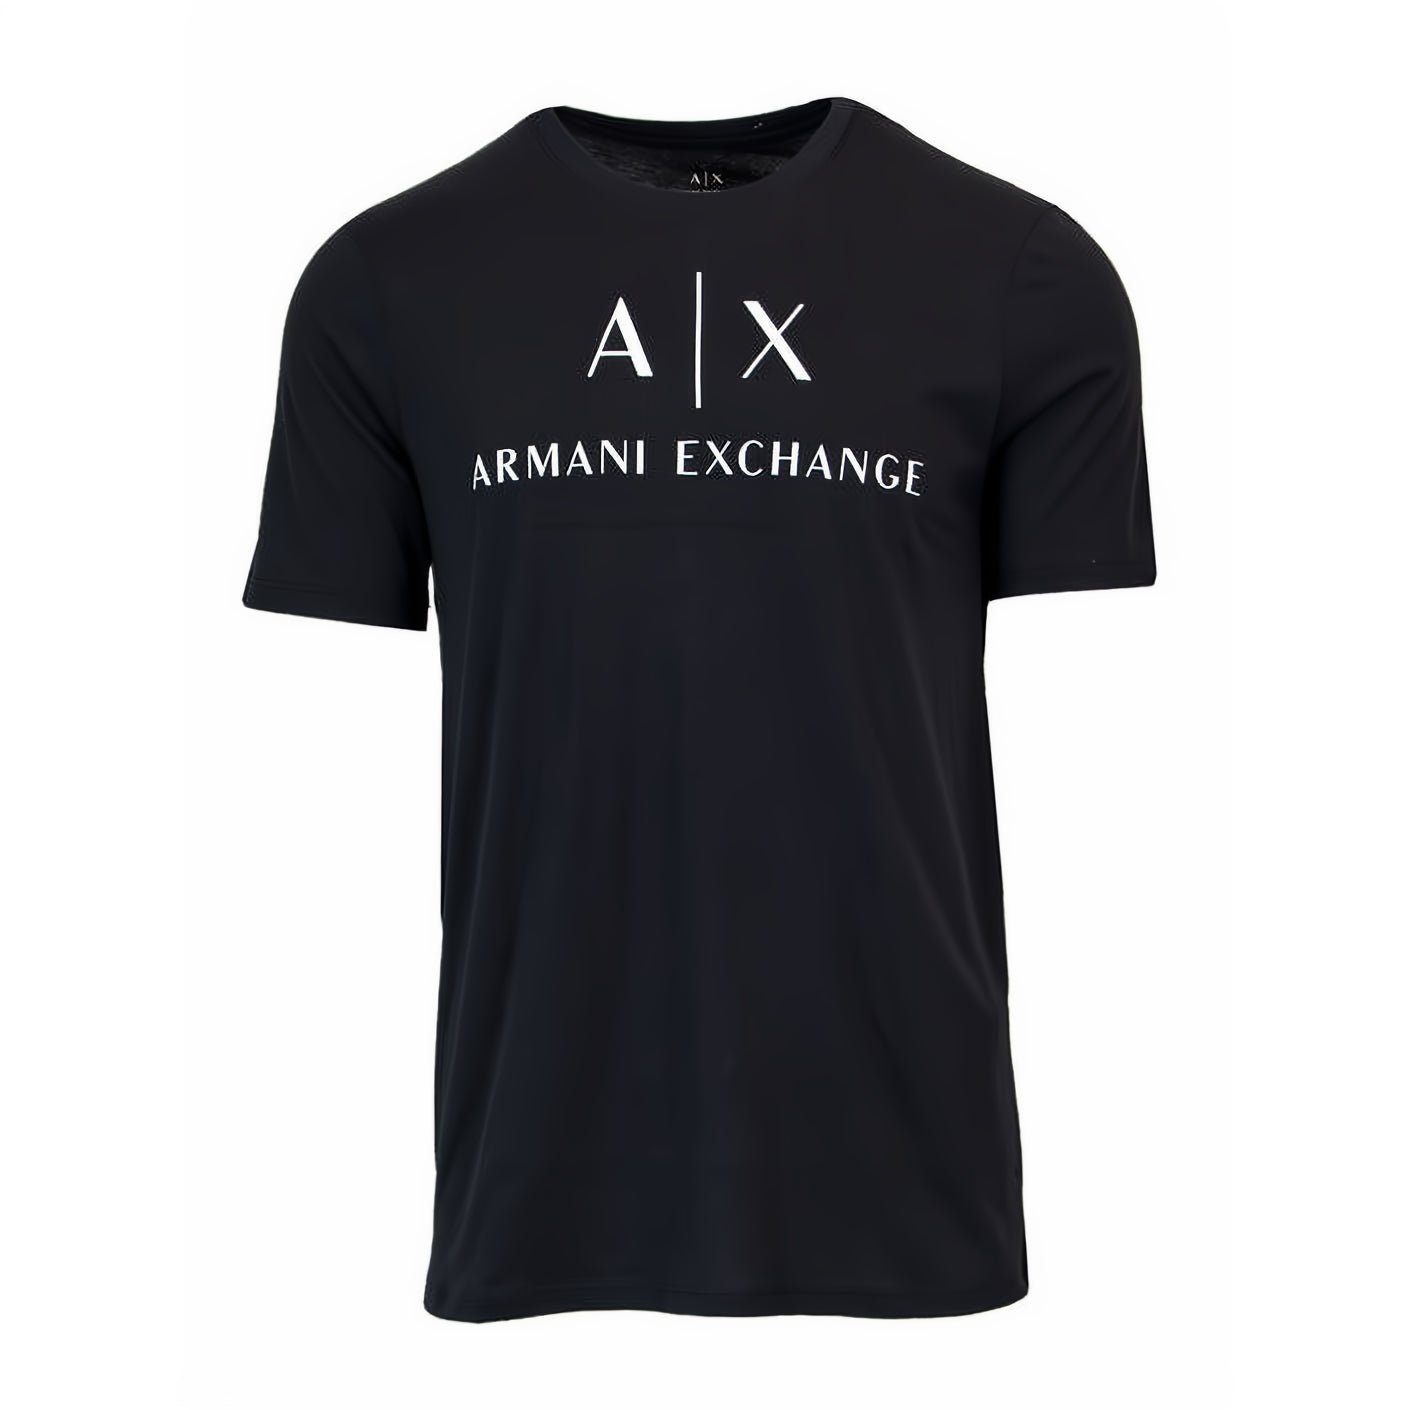 ARMANI EXCHANGE T-Shirt kurzarm, Rundhals, ein Must-Have für Ihre Kleidungskollektion! Schwarz | 